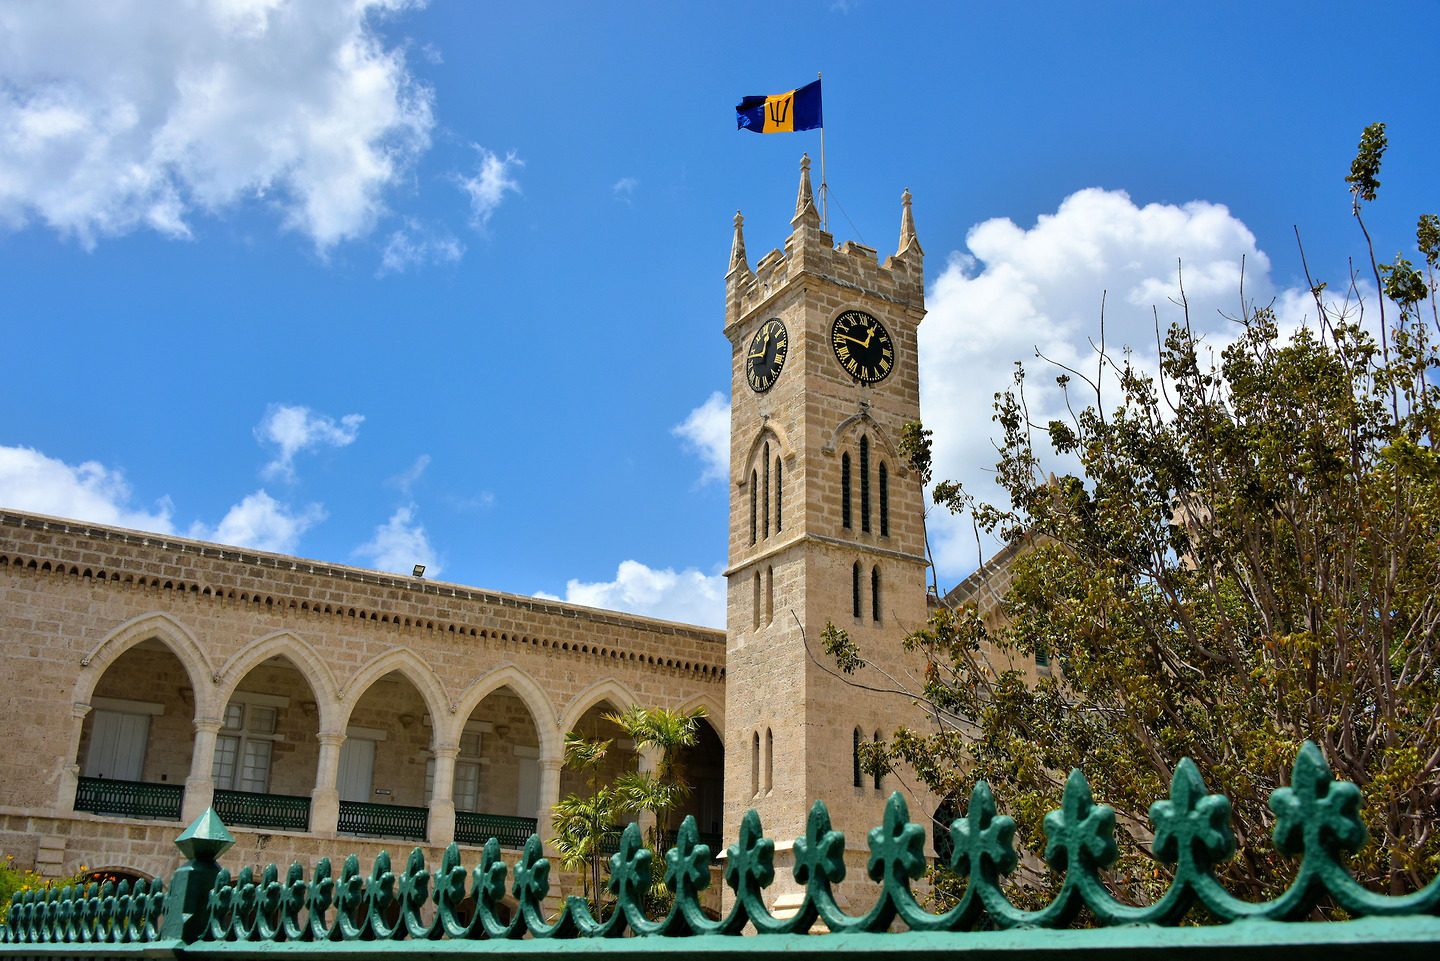 Parliament of Barbados (photo credit: Barbados Today)